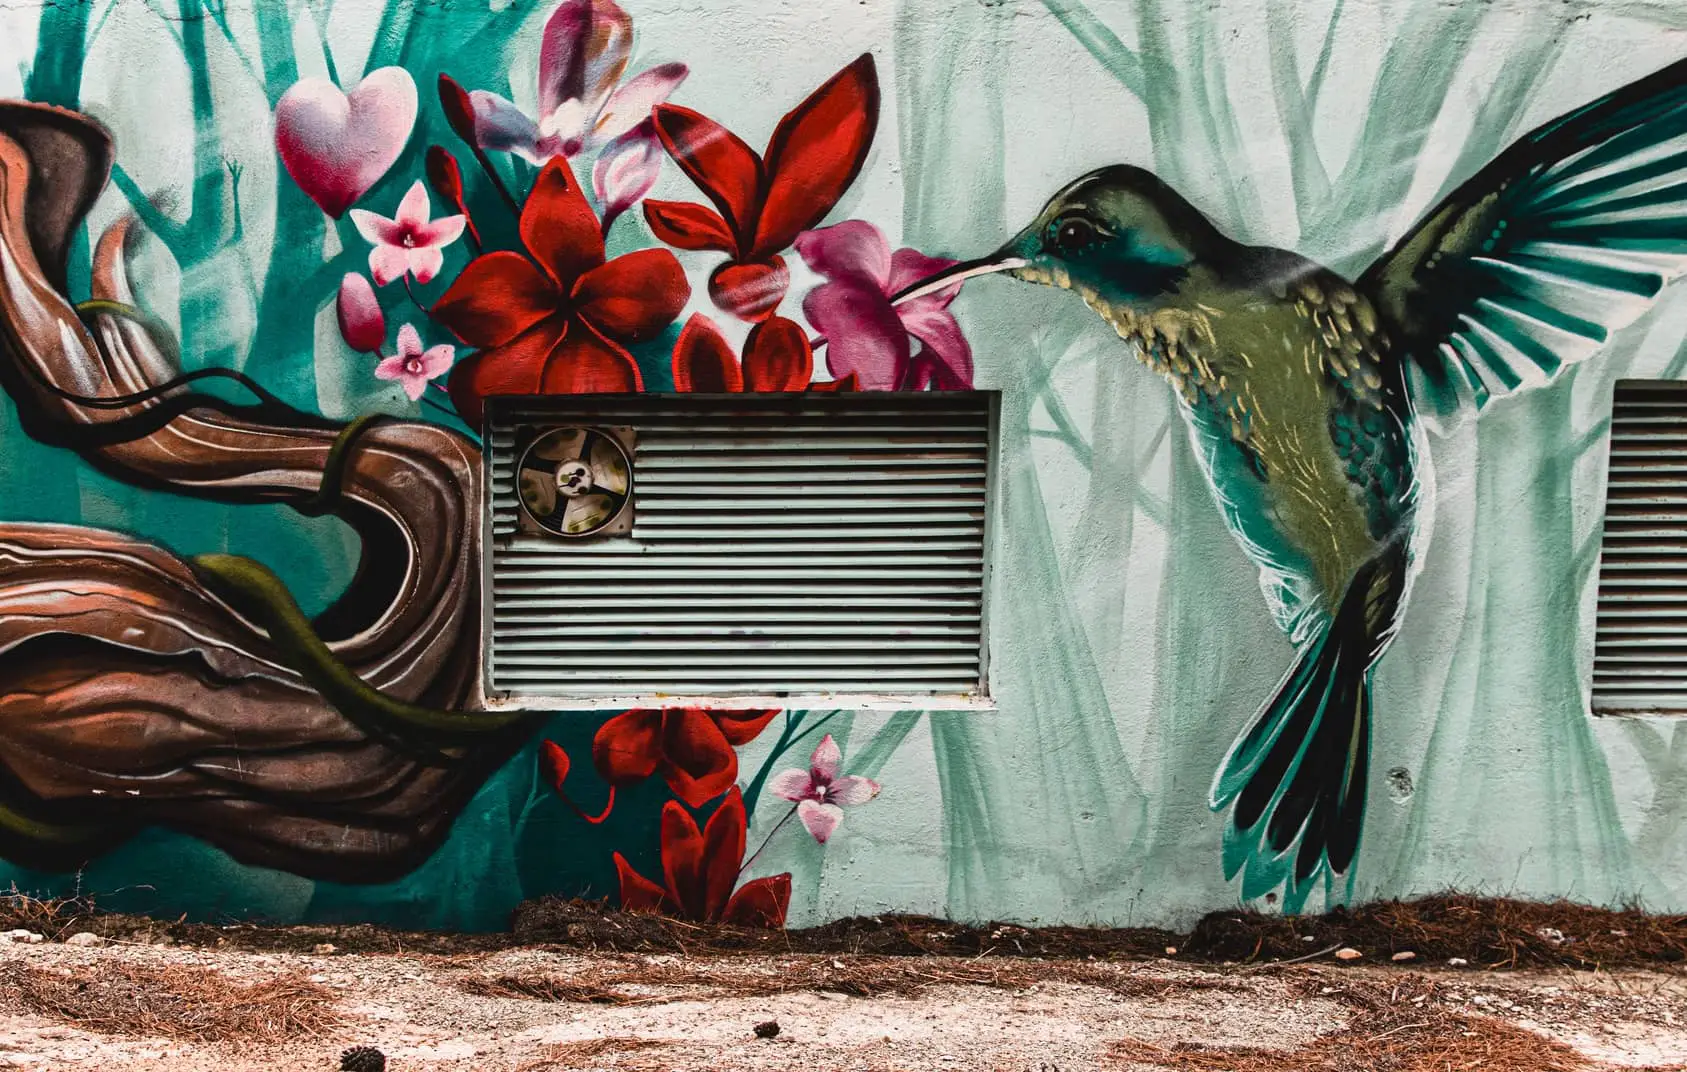 graffiti of humming bird